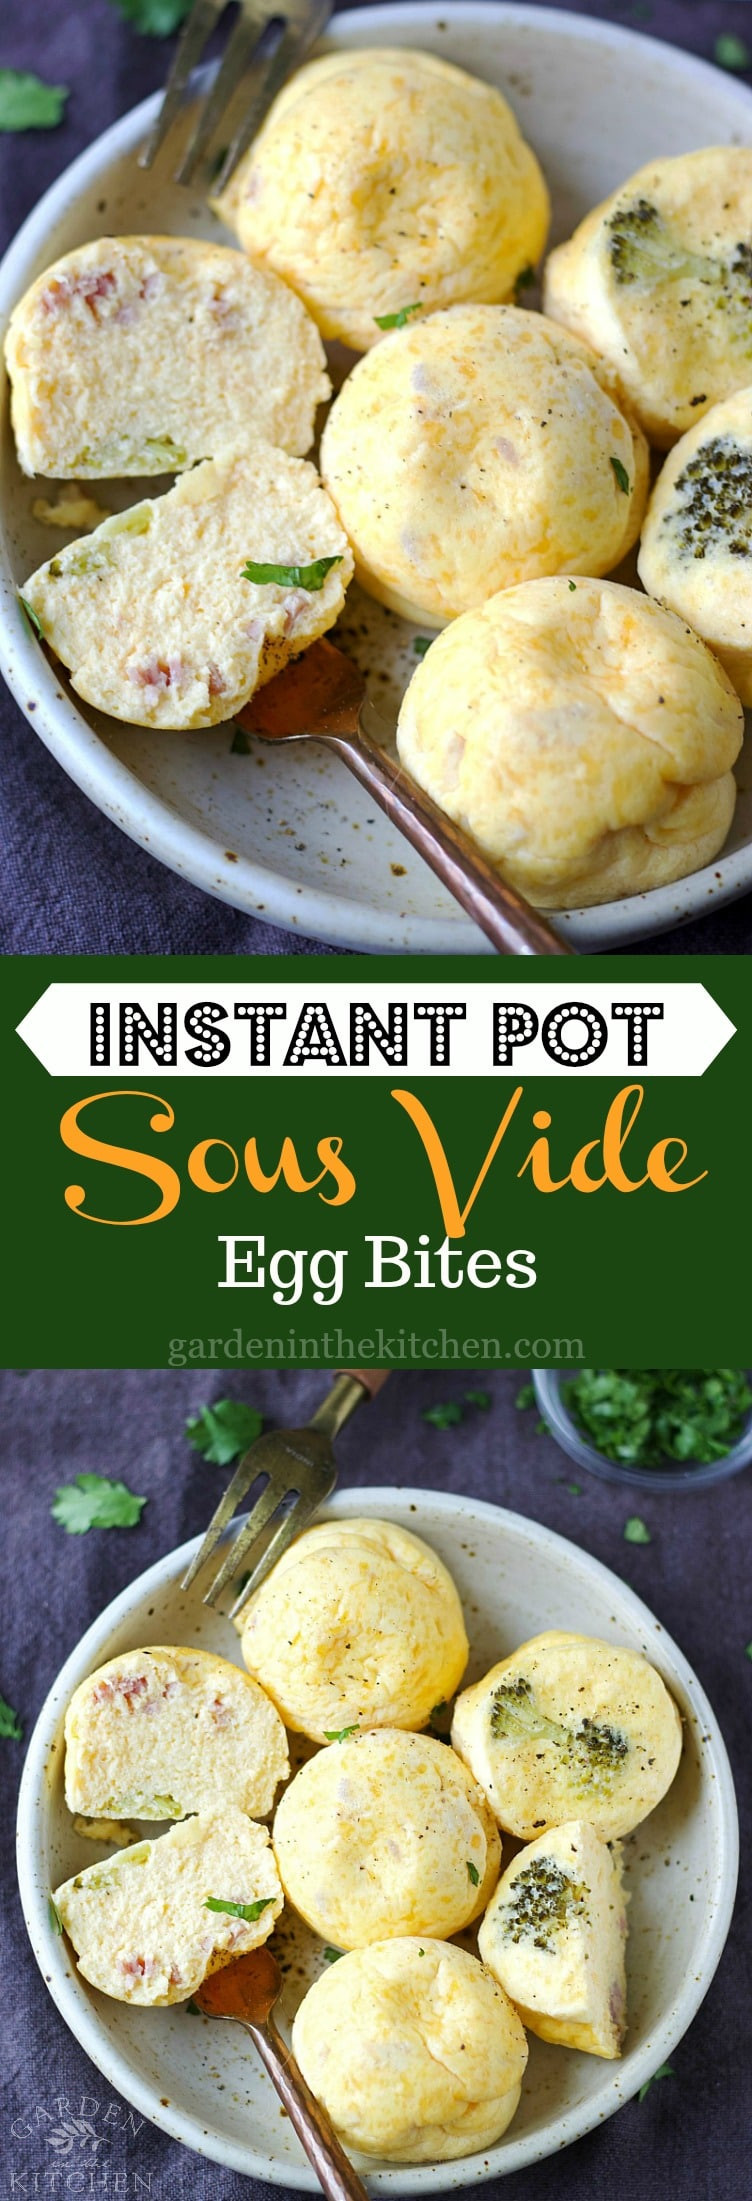 Instant Pot Sous Vide Recipes
 Instant Pot Sous Vide Egg Bites